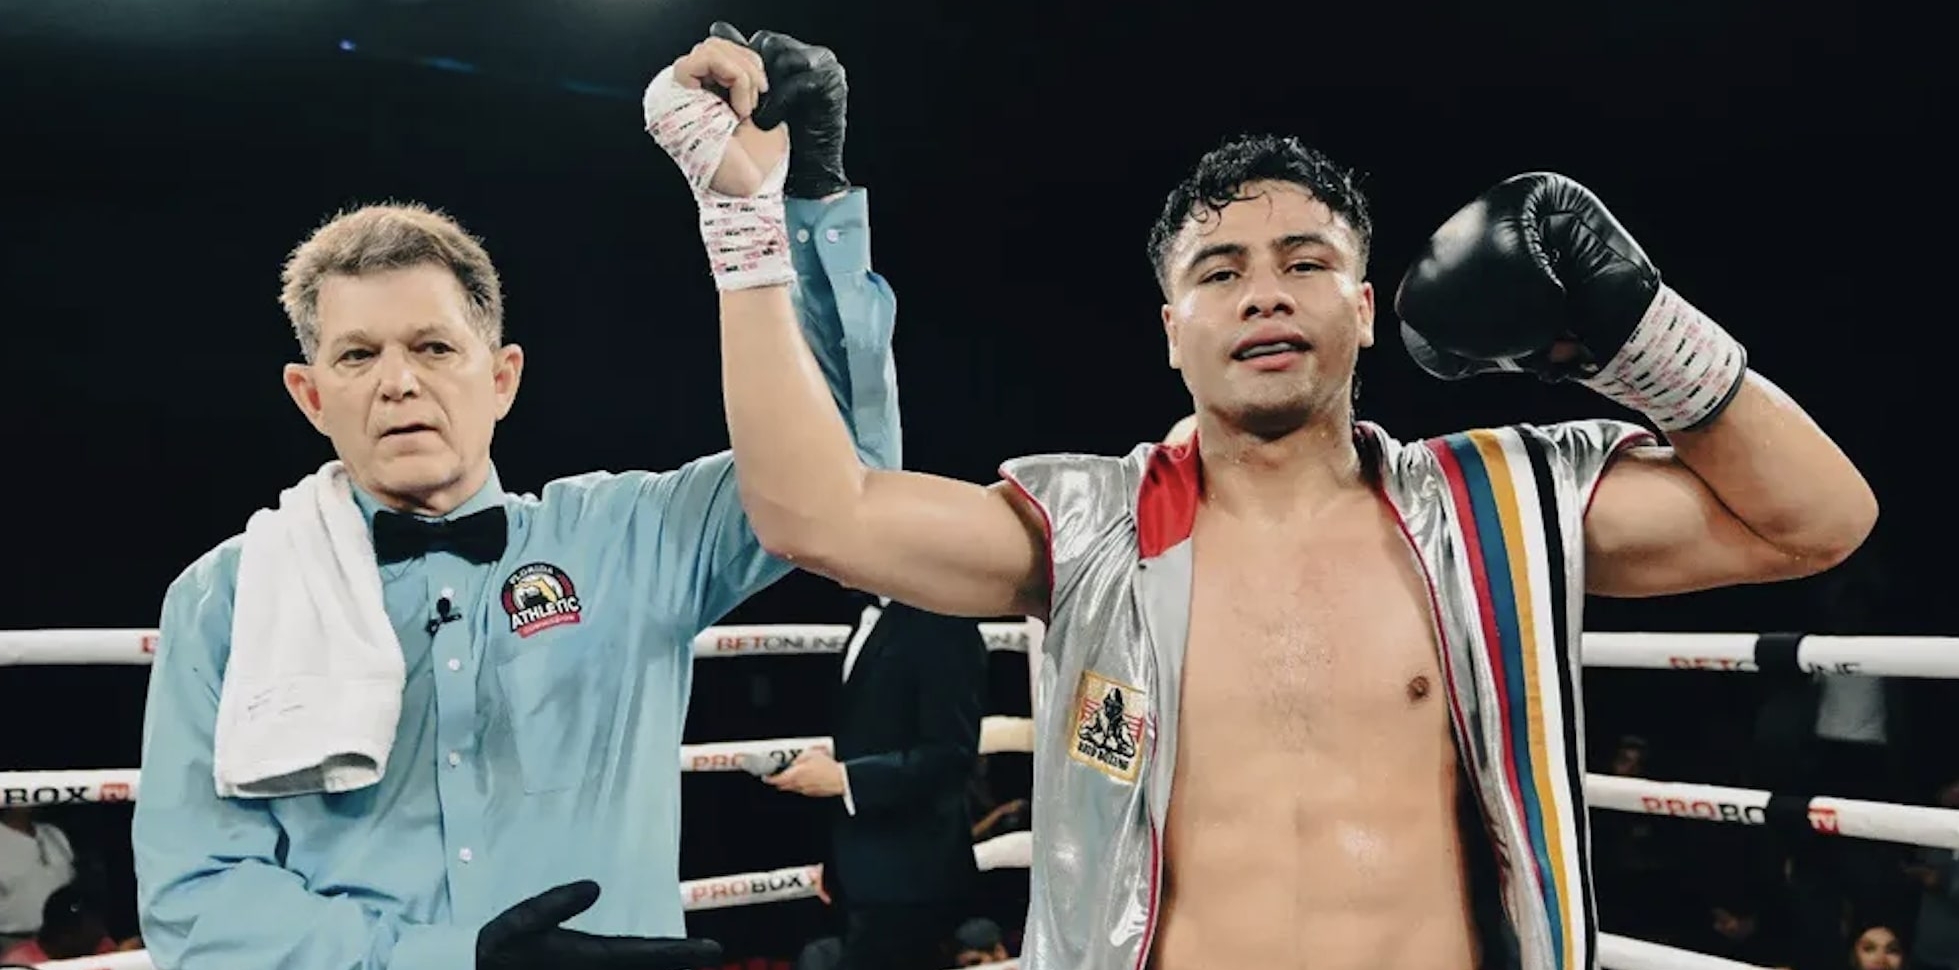 El boxeador guatemalteco iba en busca de su victoria 17, pero ahora tendrá que esperar para volver al ring. (Foto Prensa Libre: Hemeroteca PL)